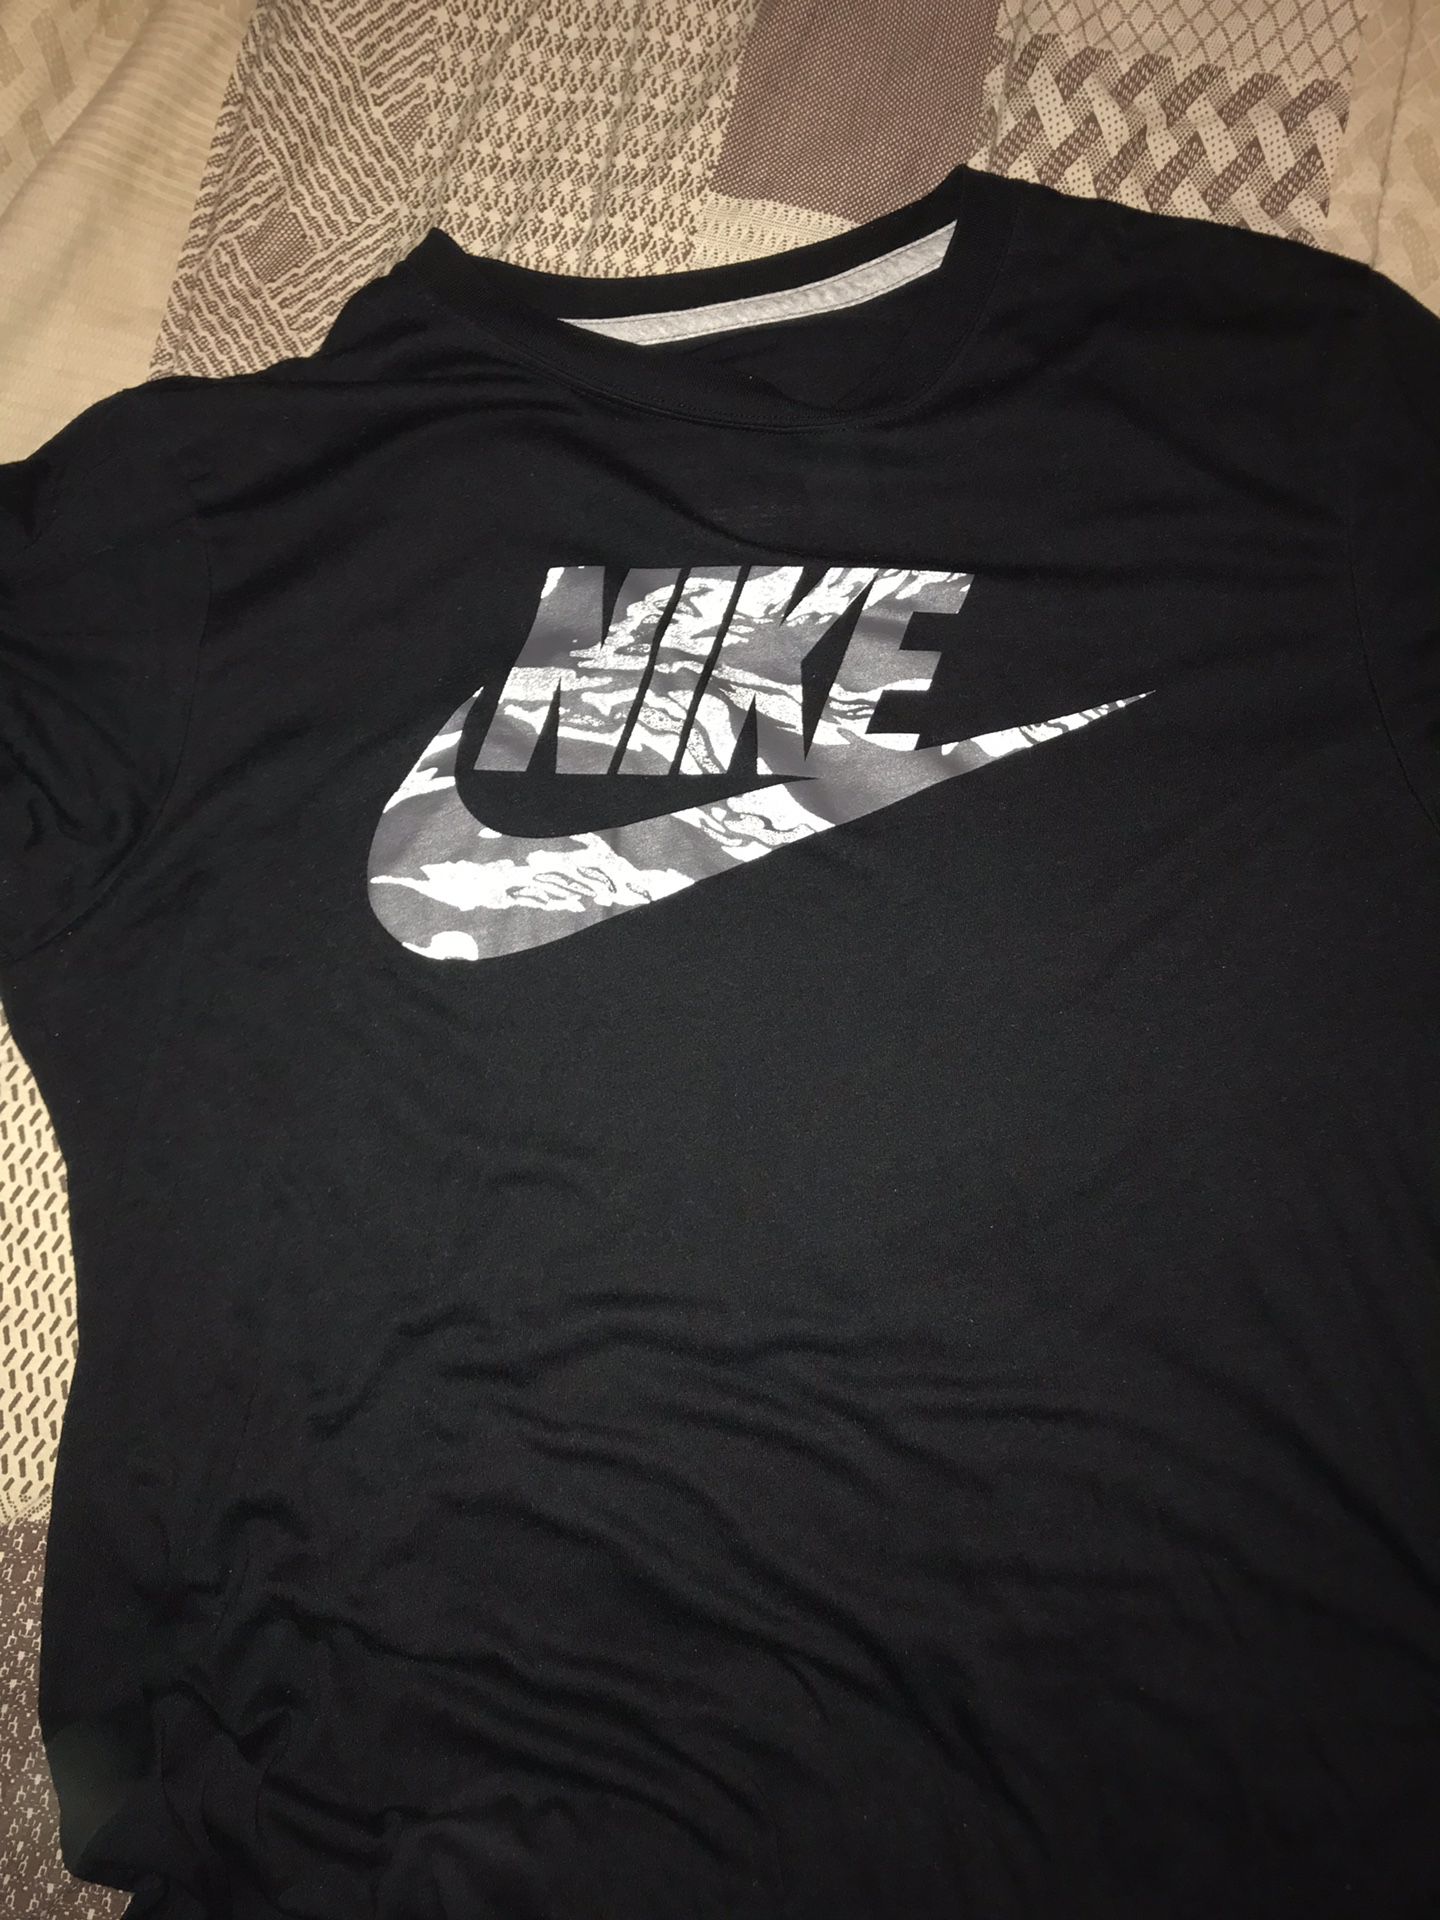 XL Camo Nike shirt